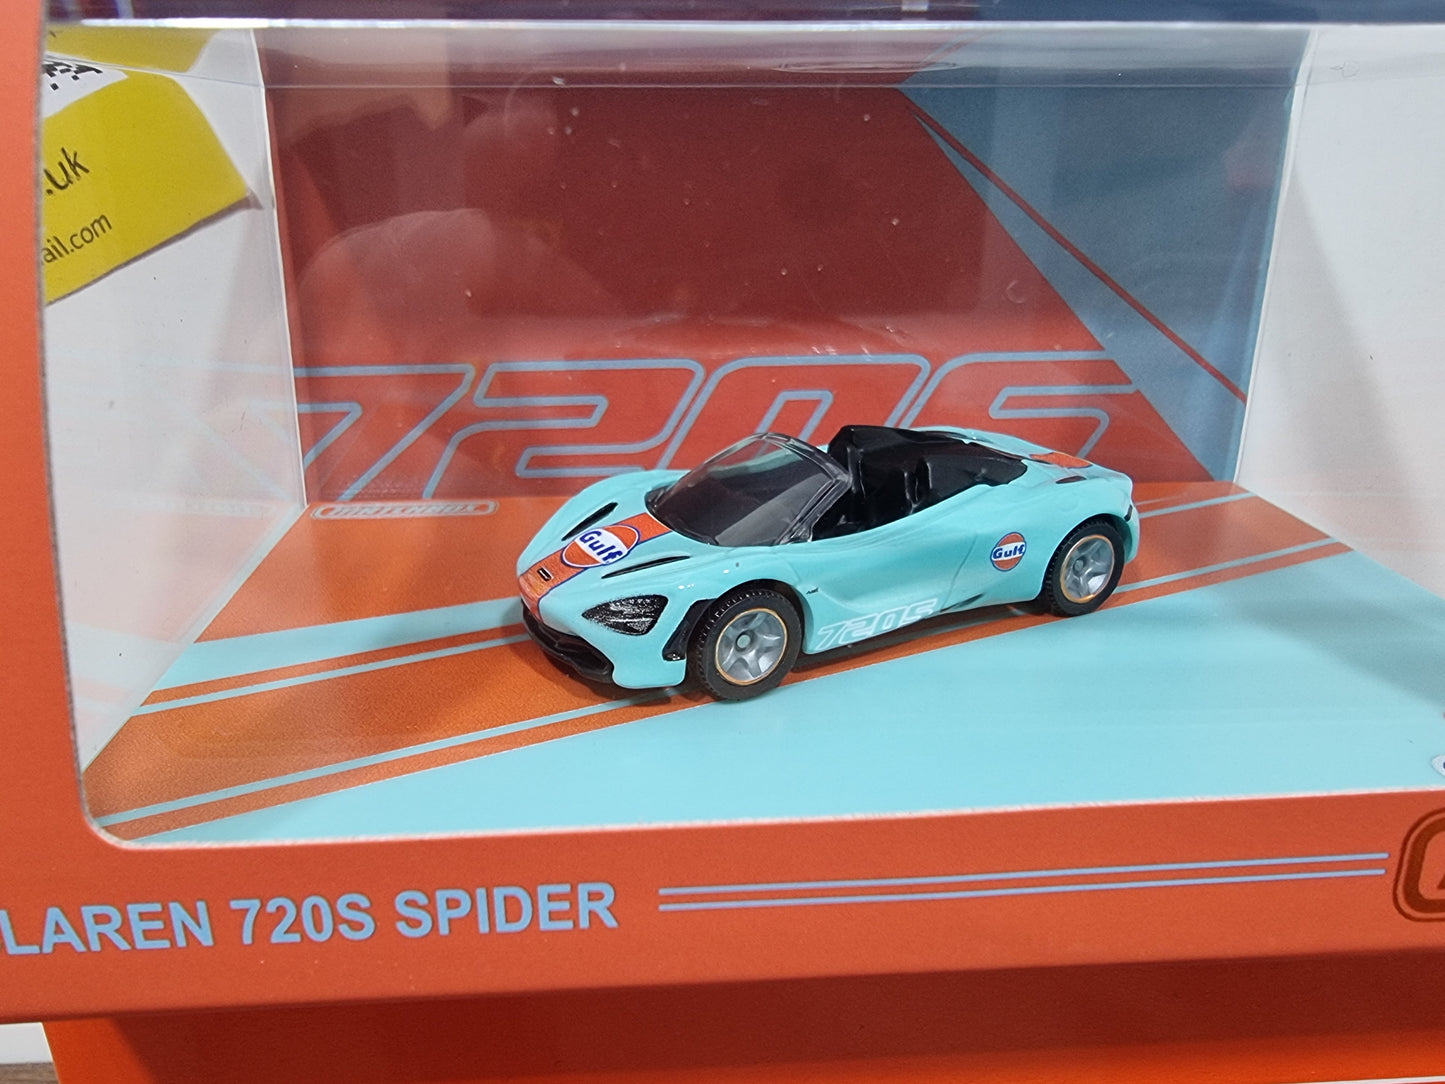 Matchbox McLaren 720s Spider